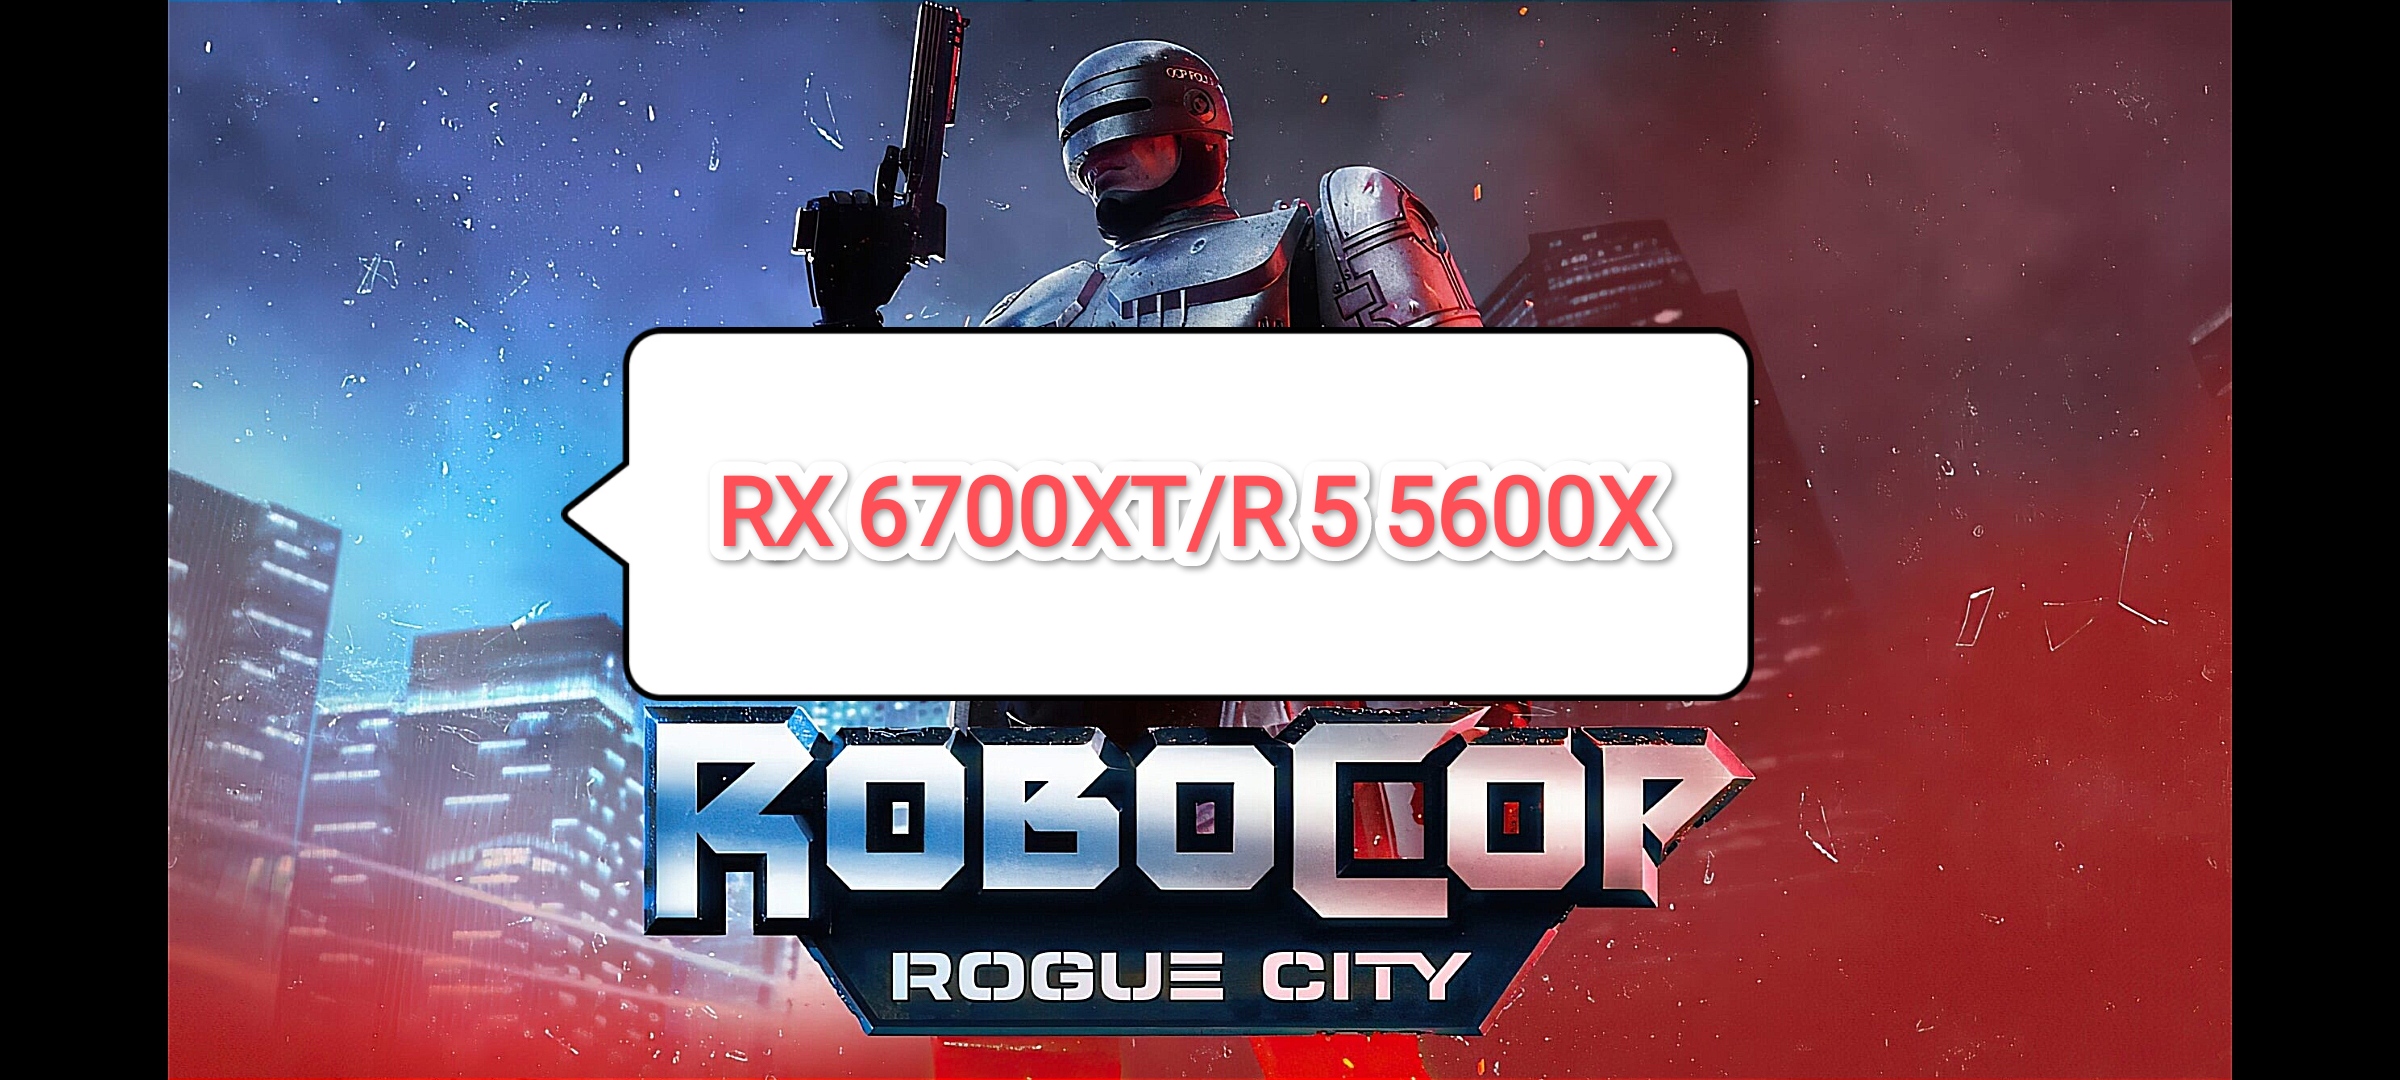 Robocop Rogue City Demo - тест игры на RX 6700 XT/R 5 5600 X